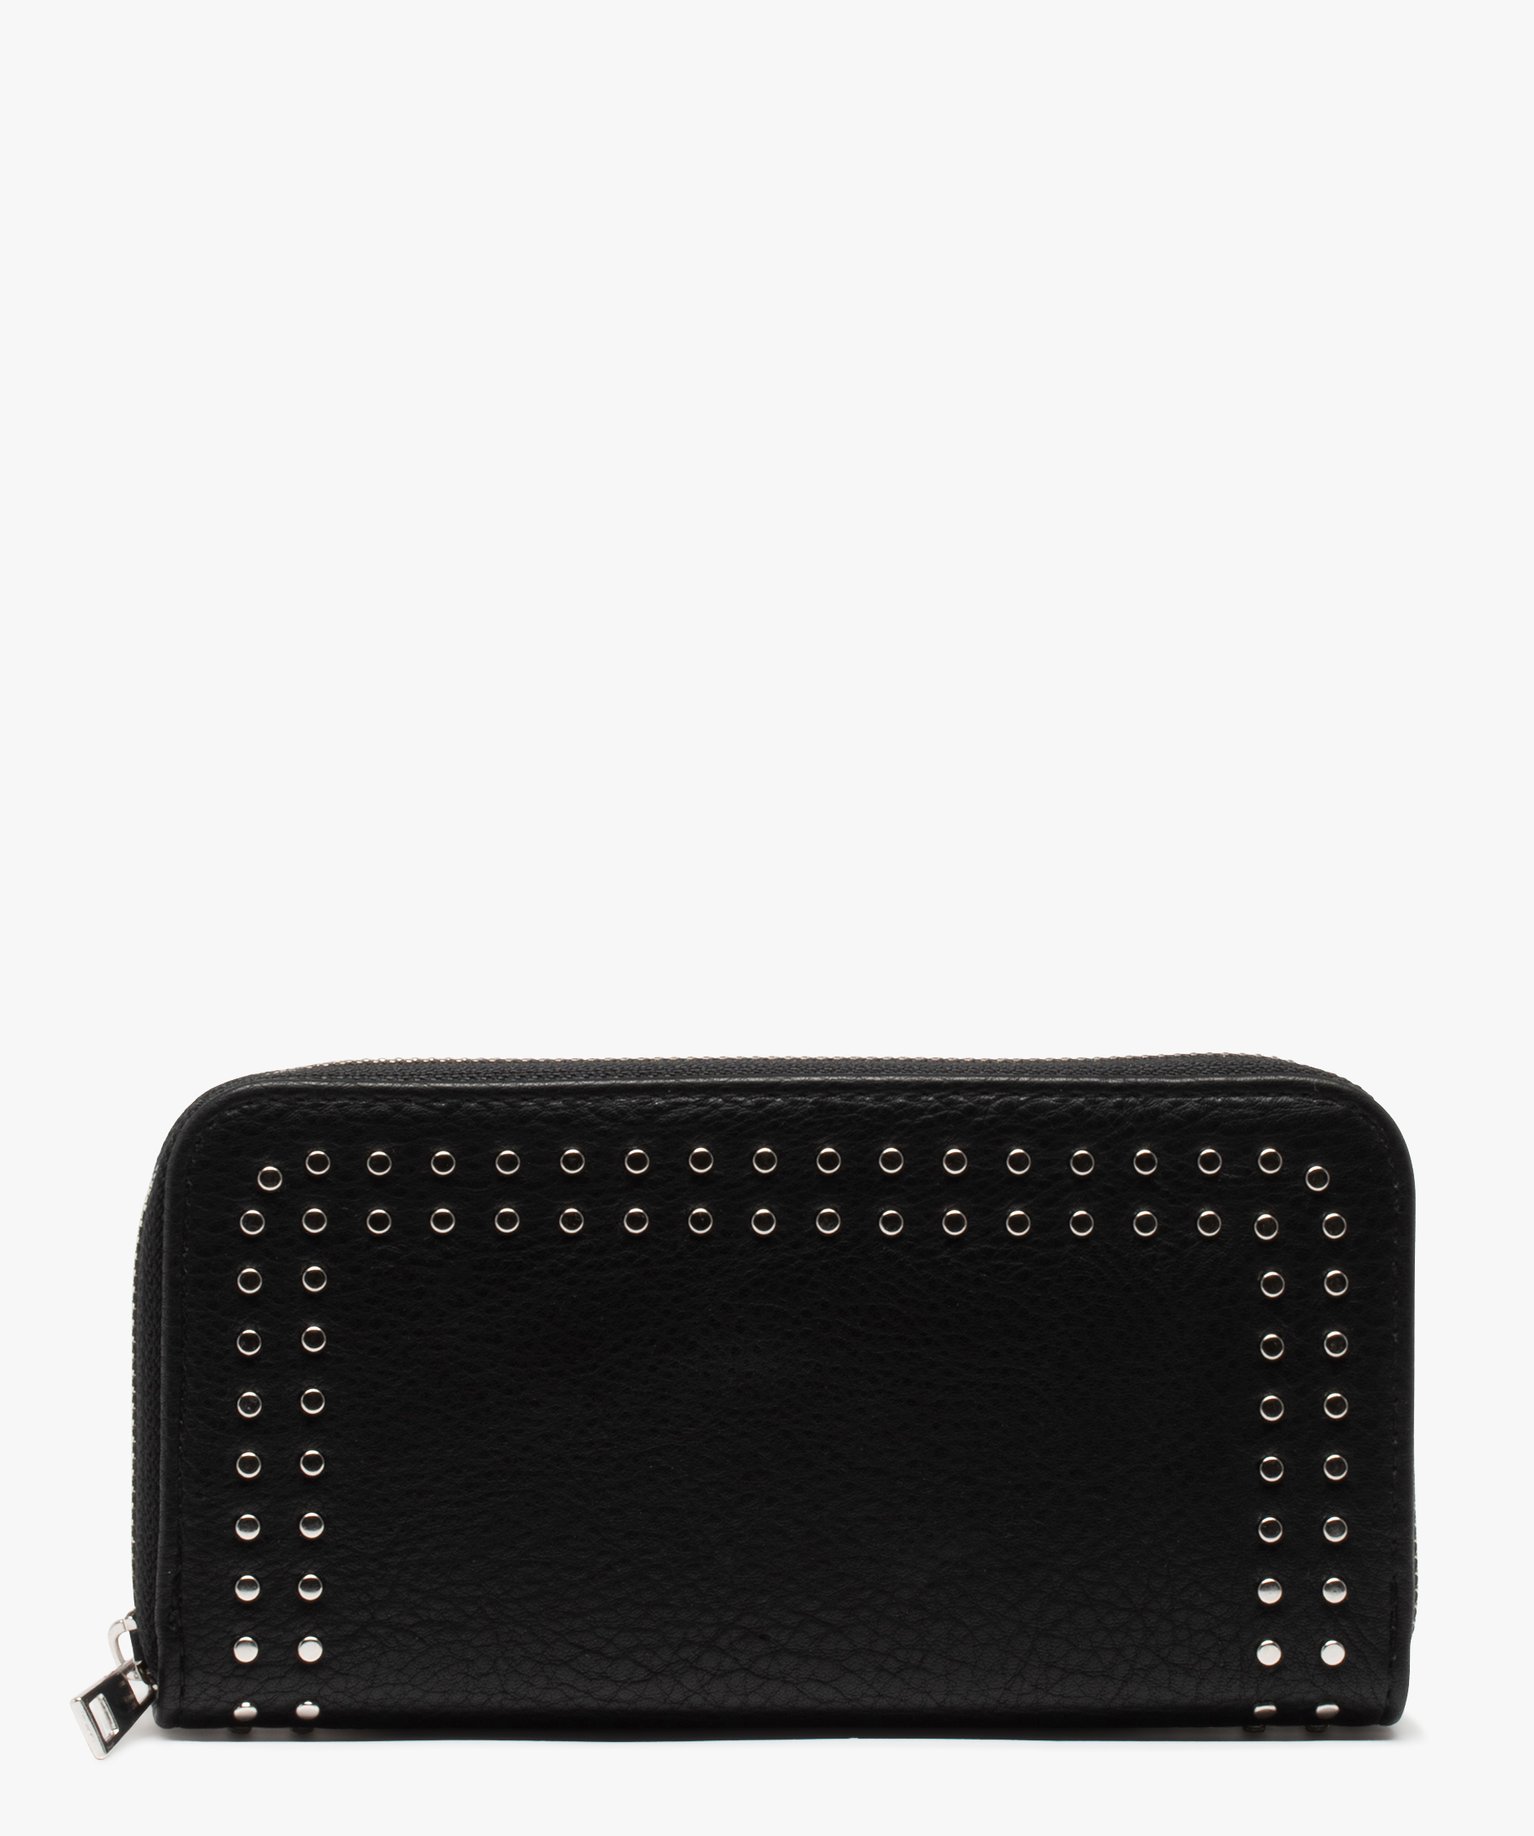 portefeuille femme grand format avec clous metalliques noir porte-monnaie et portefeuilles